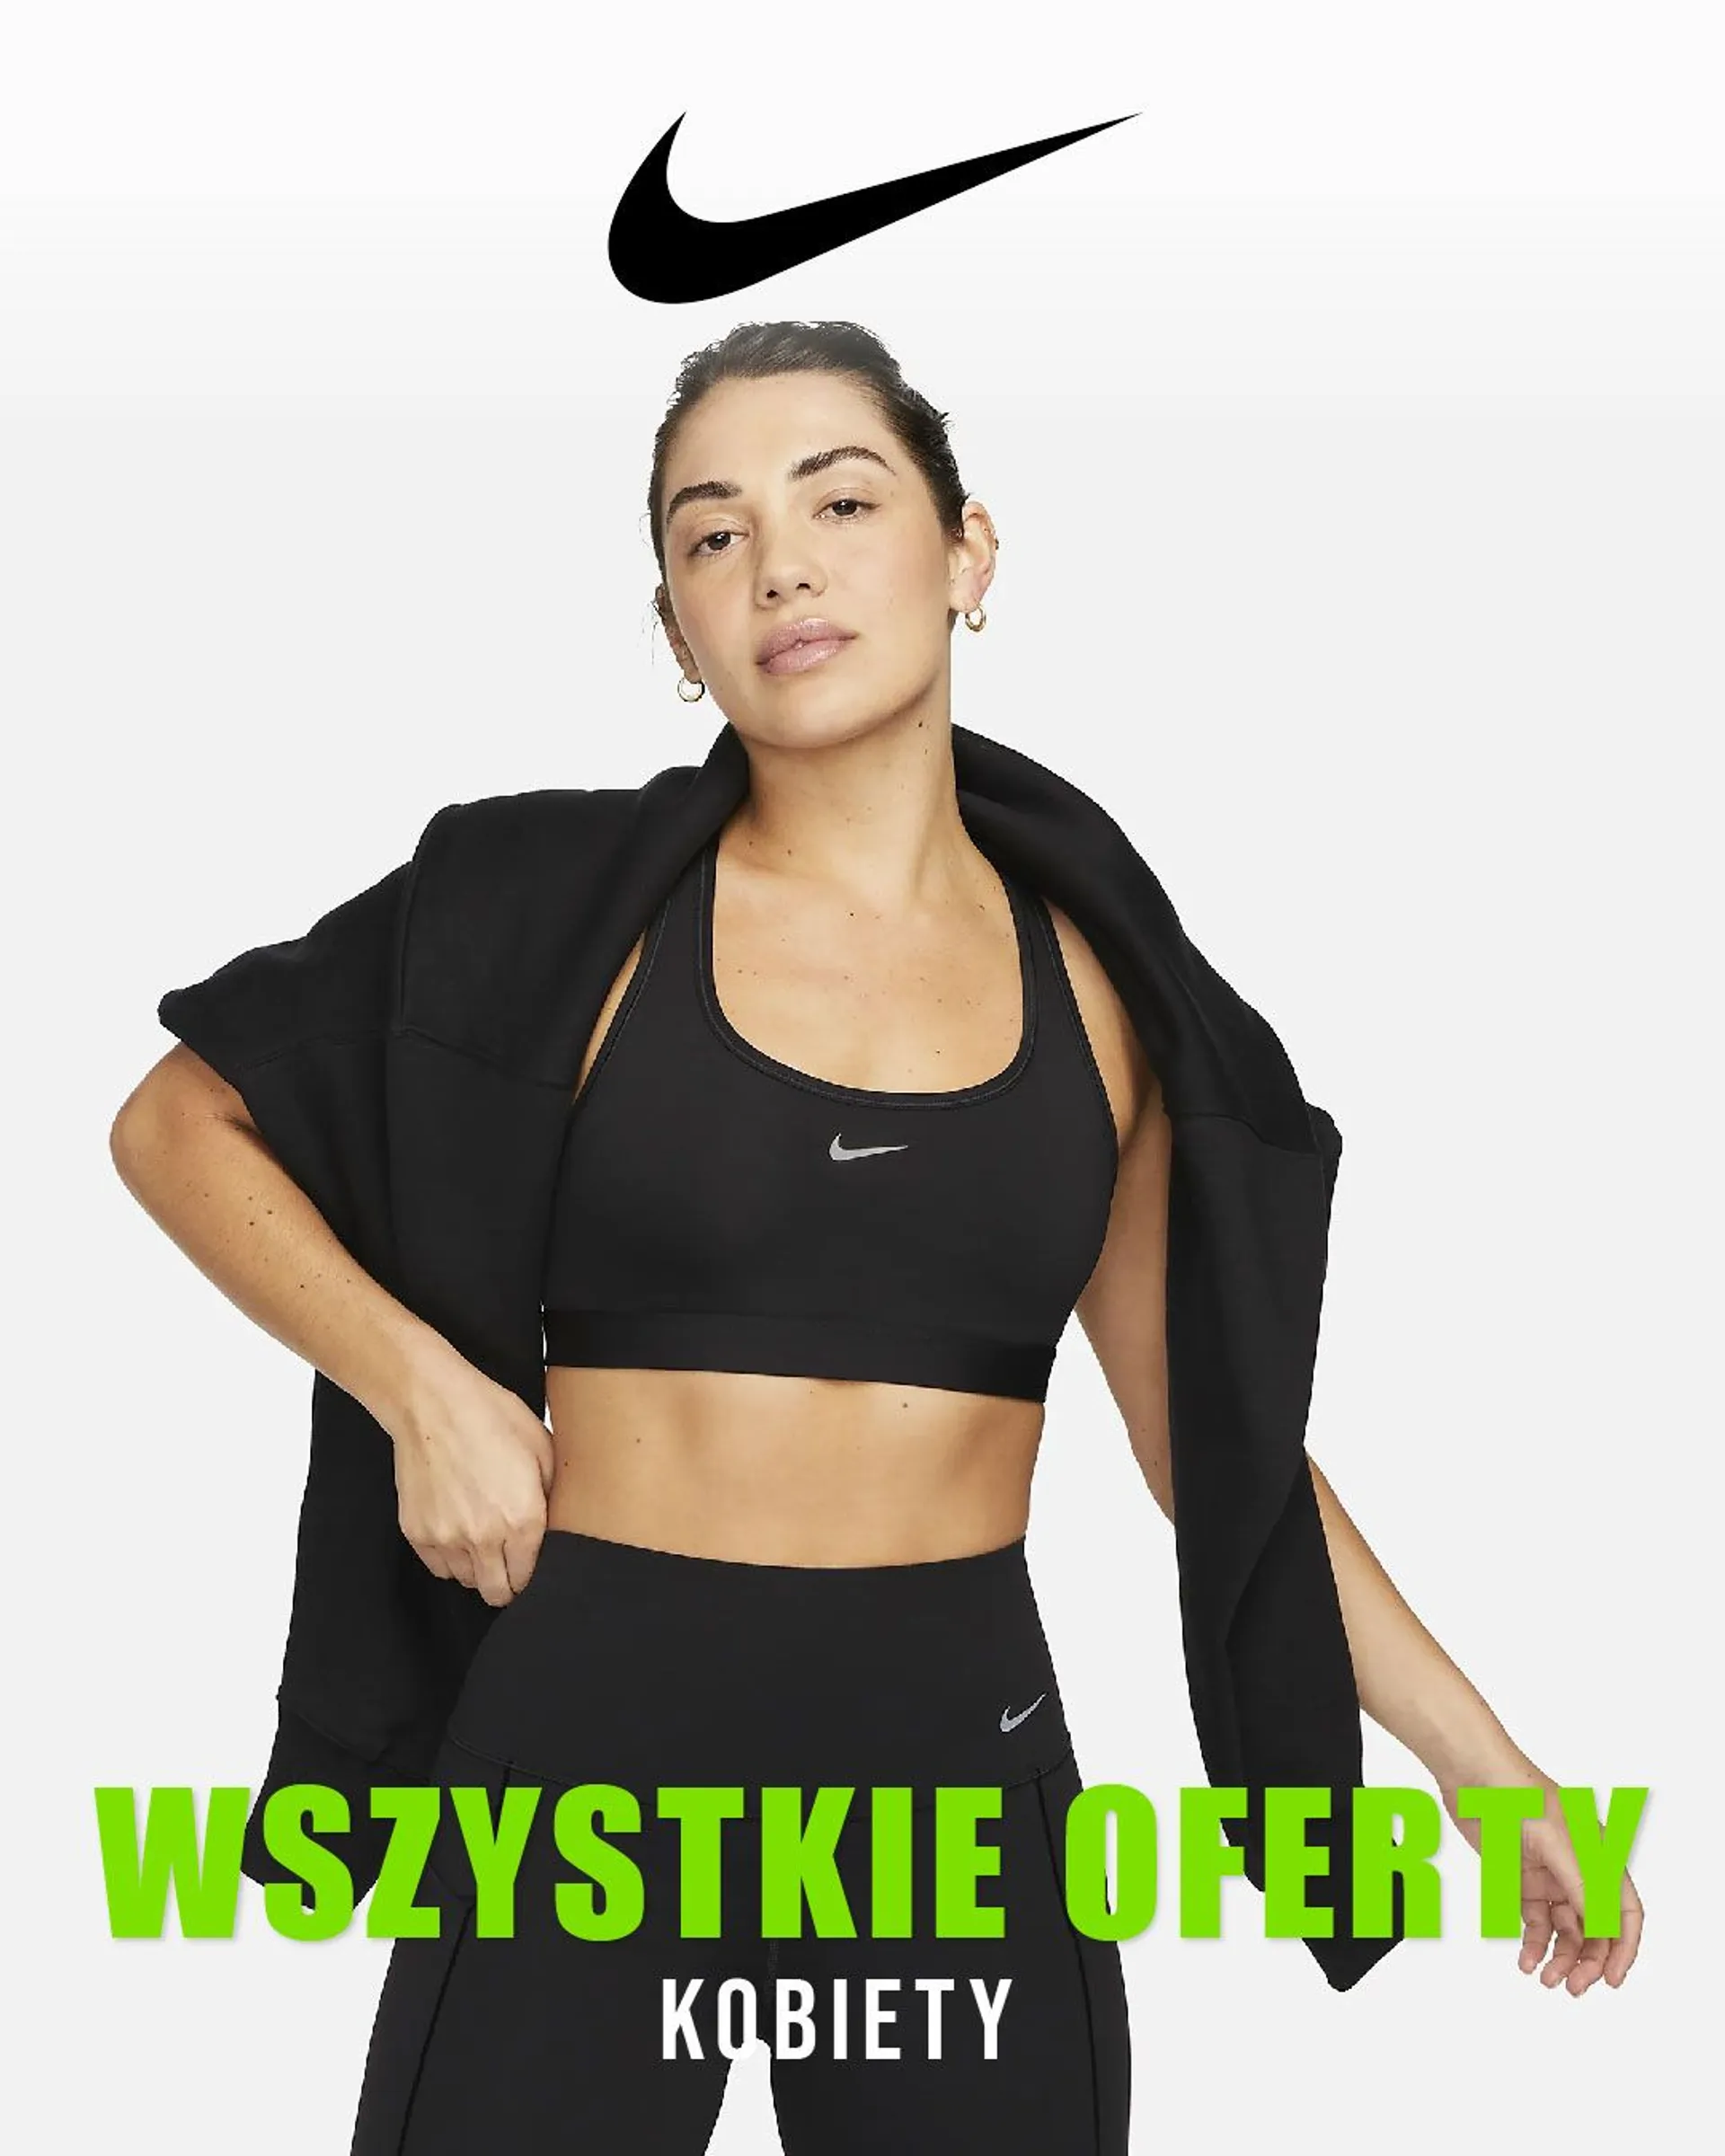 Nike - Kobiety - 27 marca 1 kwietnia 2024 - Page 1